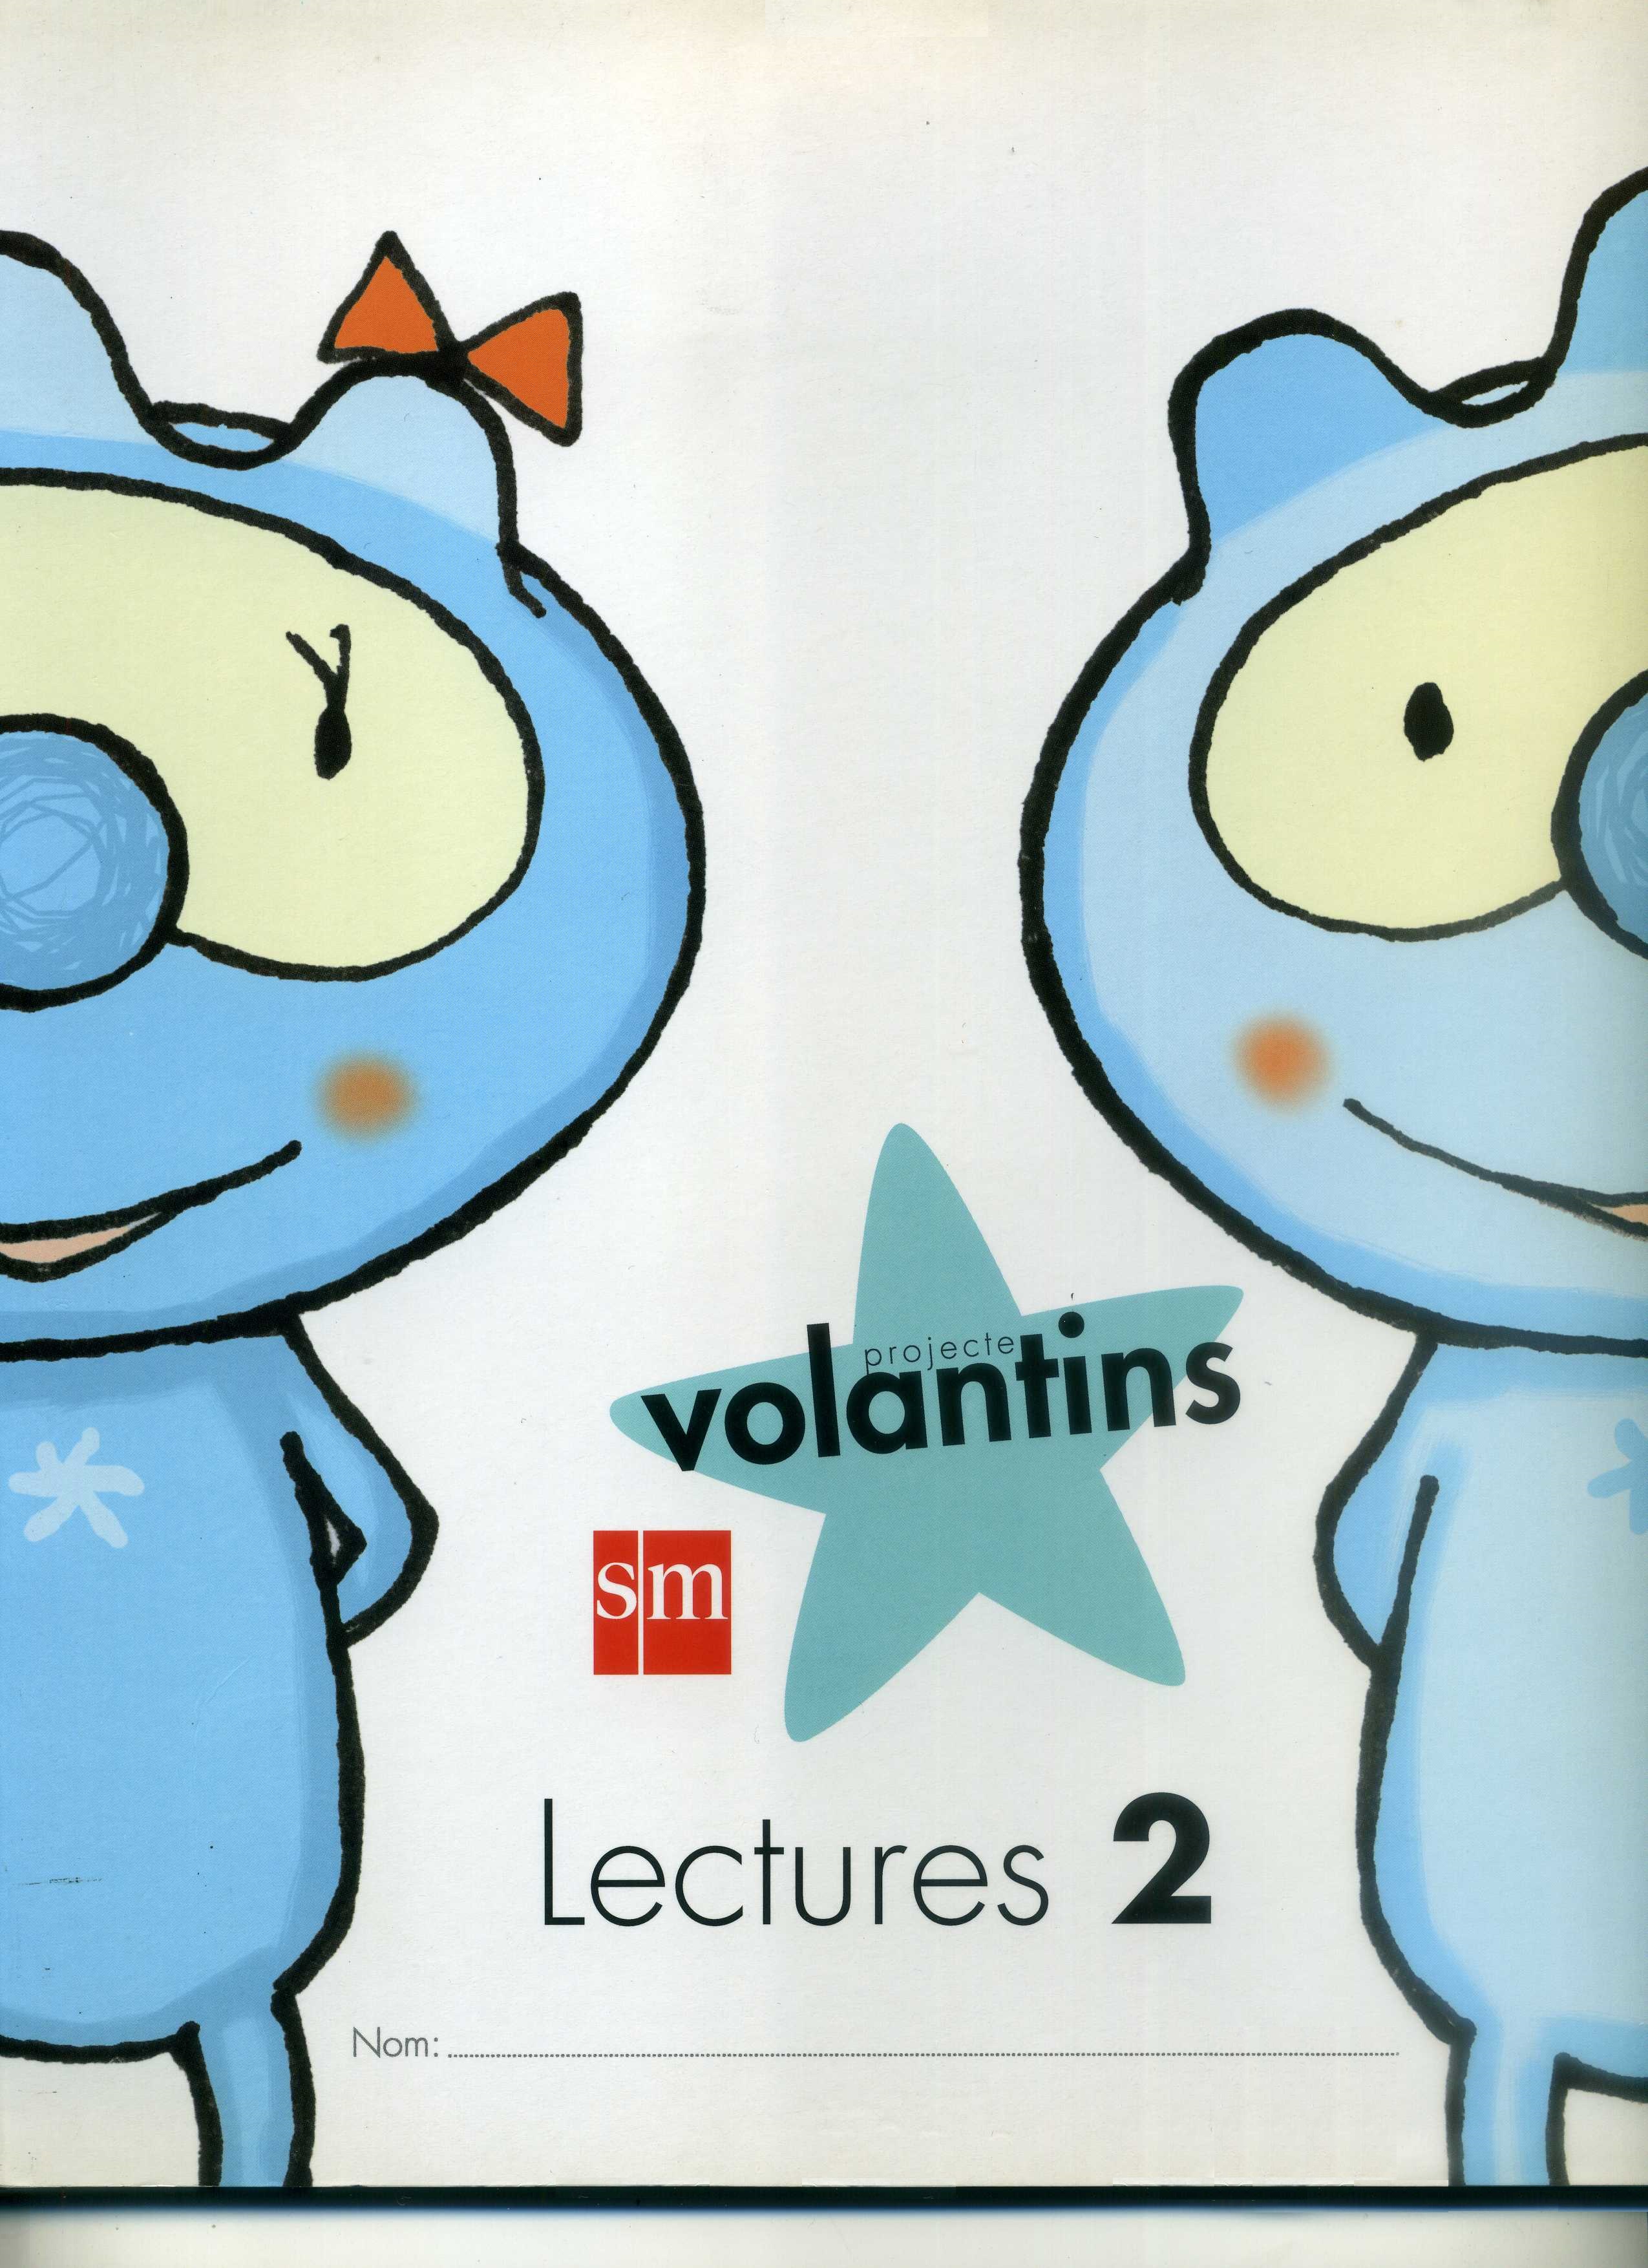 Projecte Volantins. Lectures 2